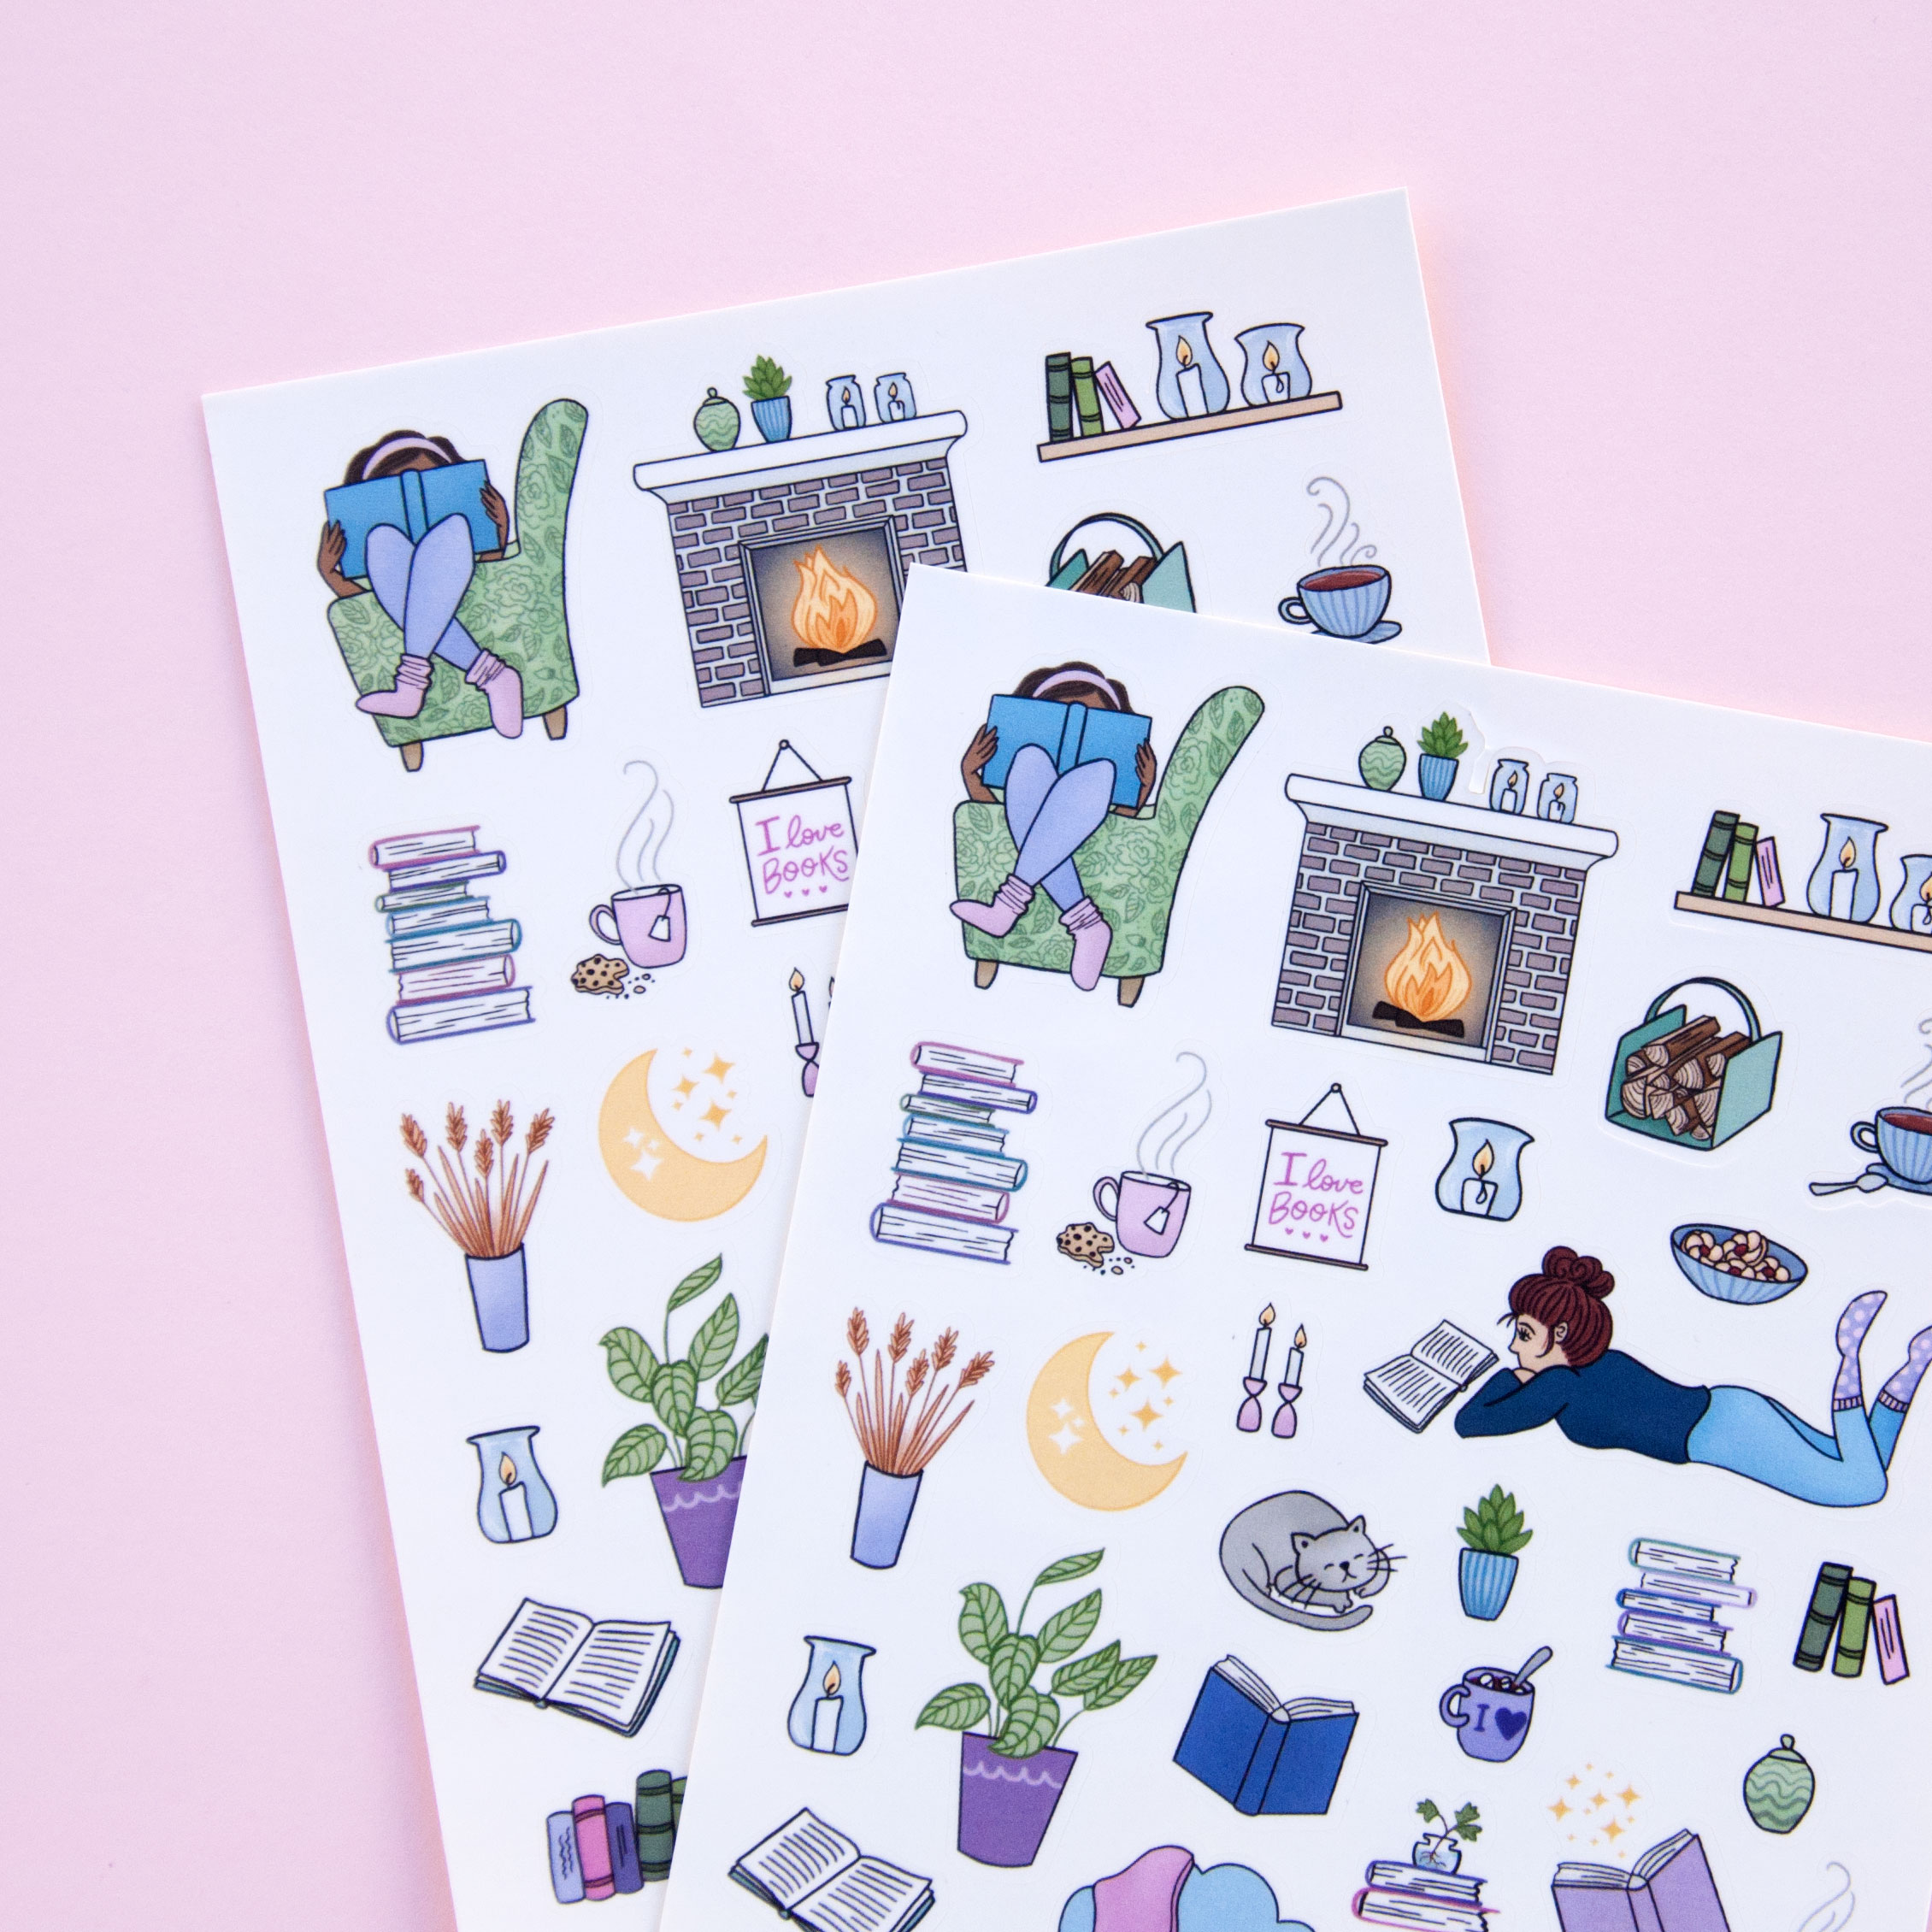 Girls Love to Read Sticker Sheet - Design by Willwa